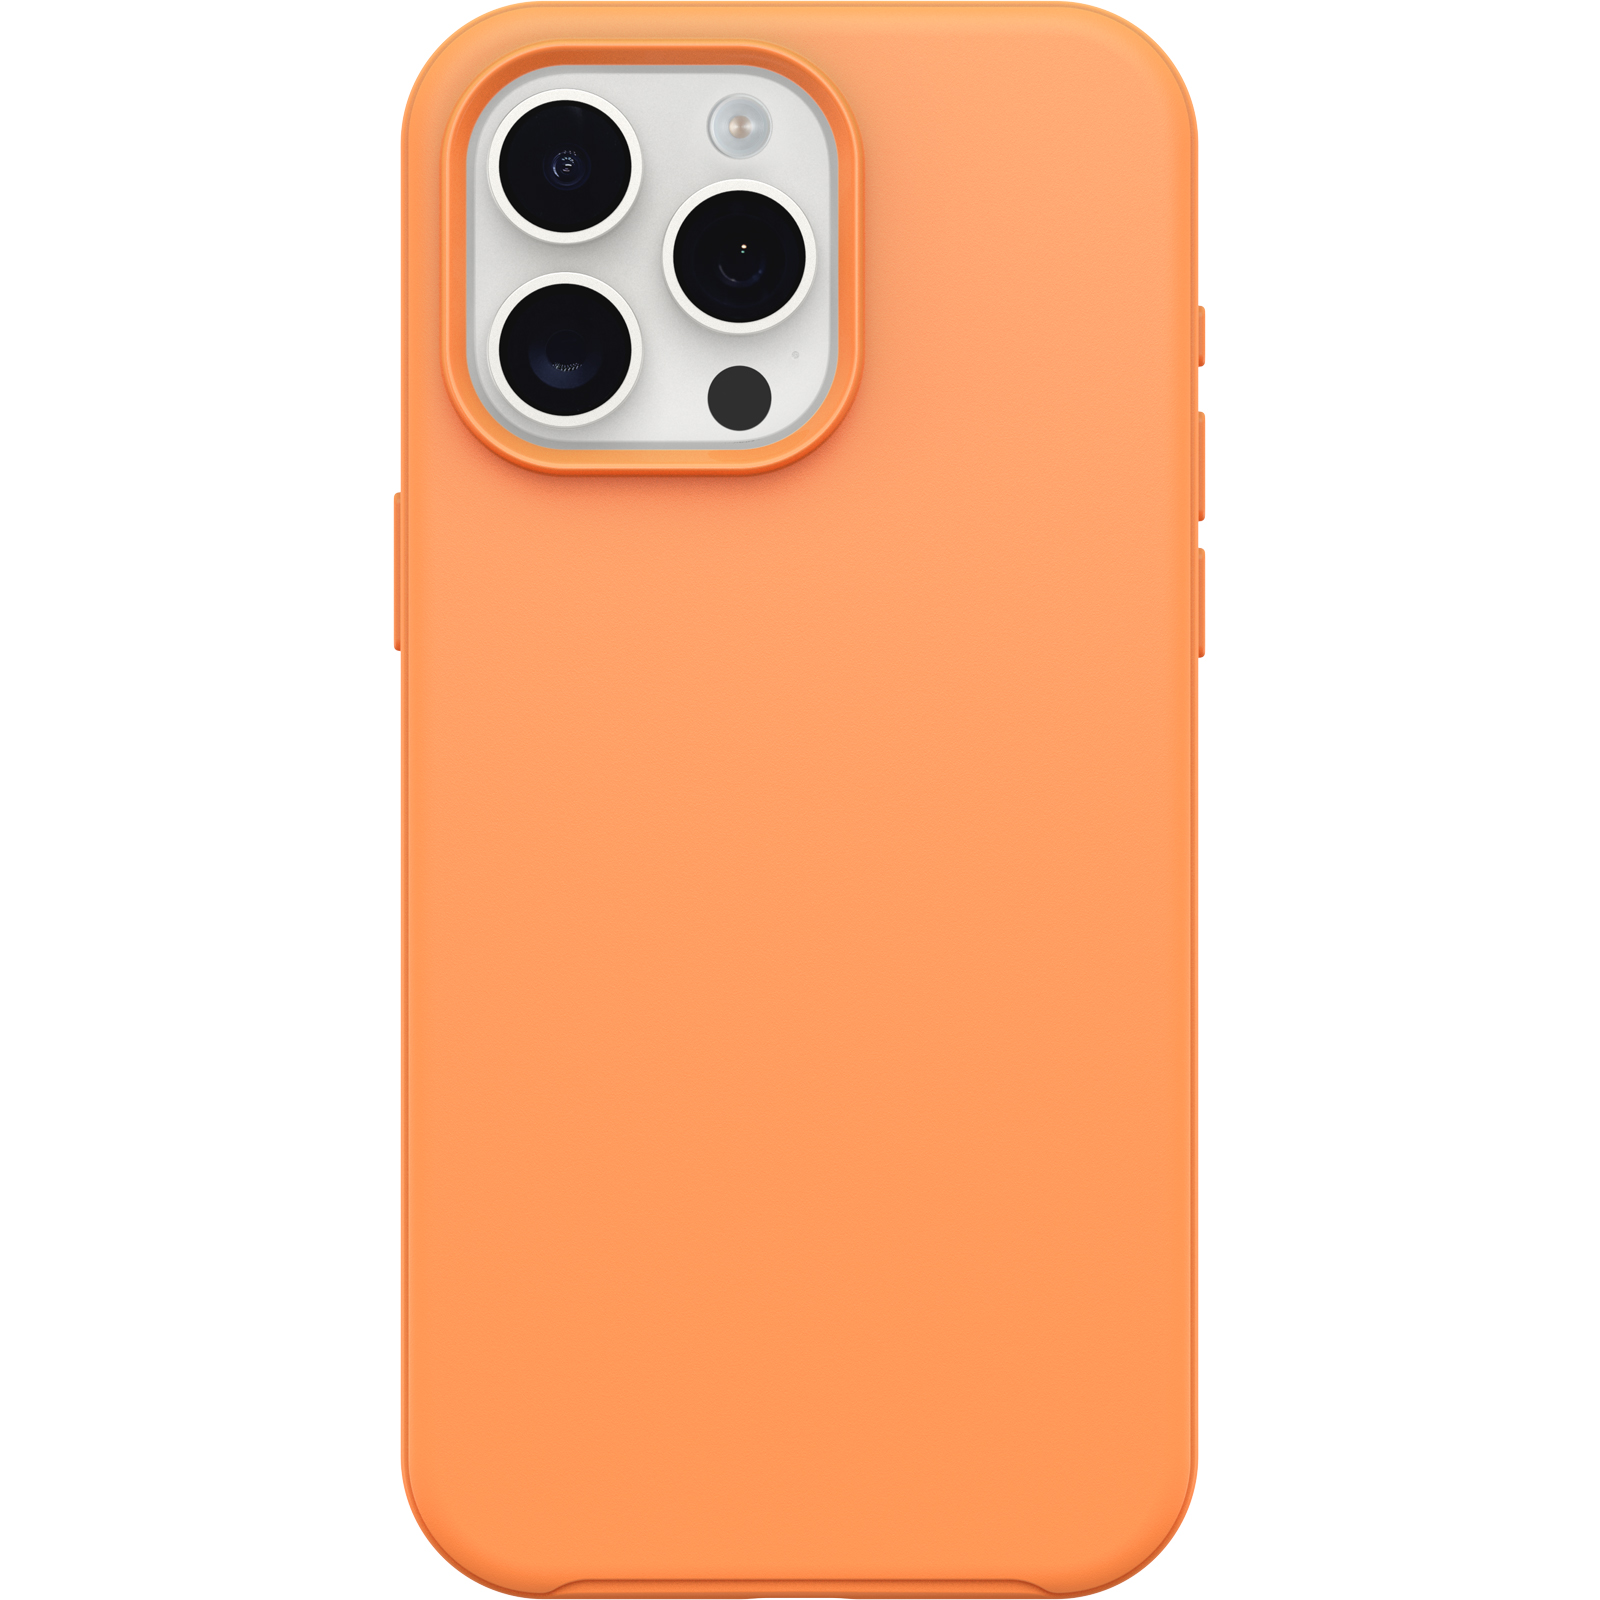 Coque Recycletek compatible MagSafe pour iPhone 15 Pro Max noire : prix,  avis, caractéristiques - Orange